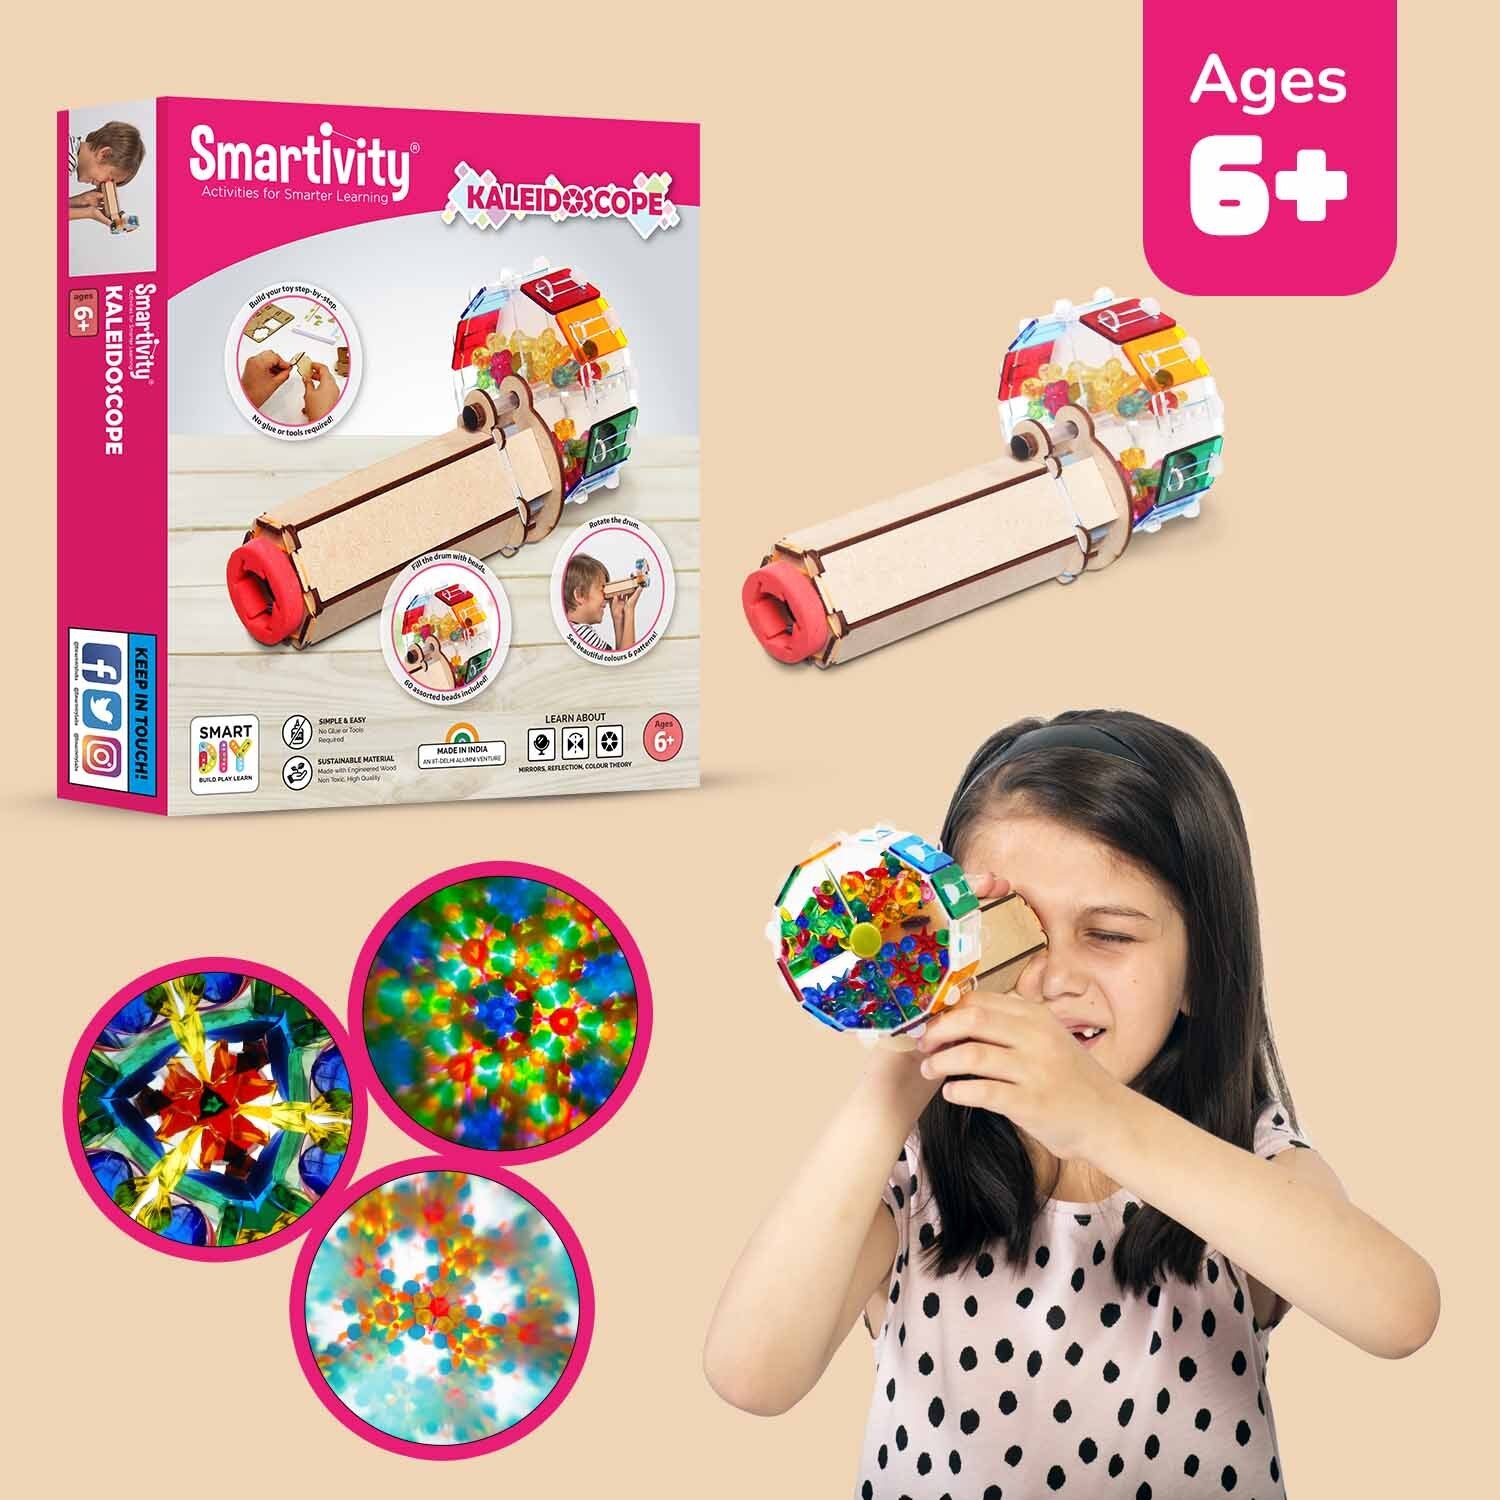 fantastic-optics-kaleidoscope-steam-based-learning-toys